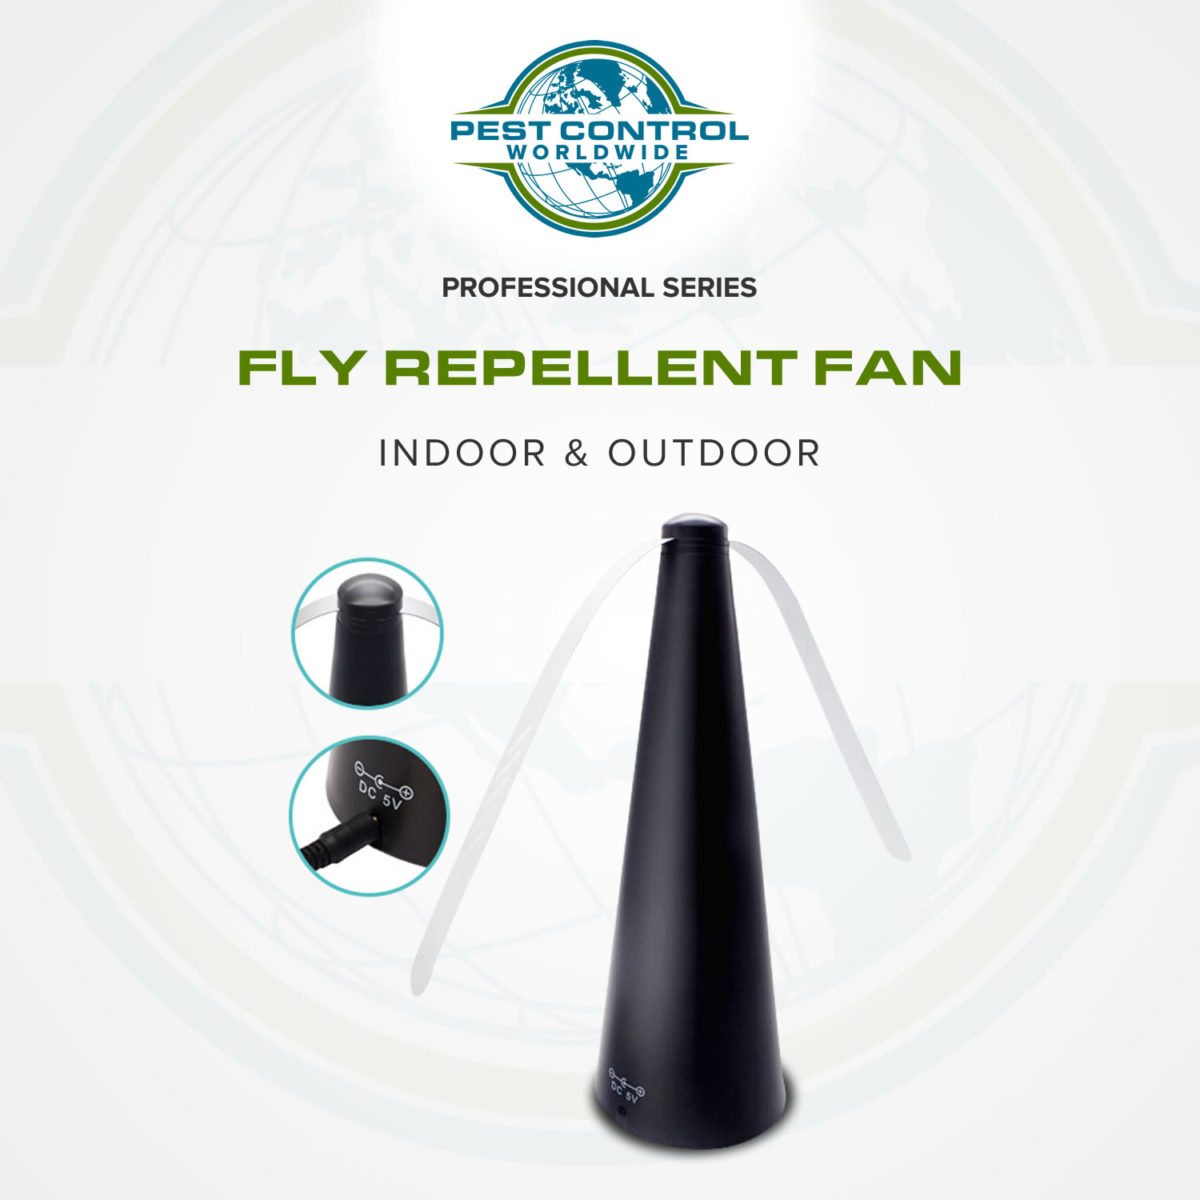 Fly Repellent Fan